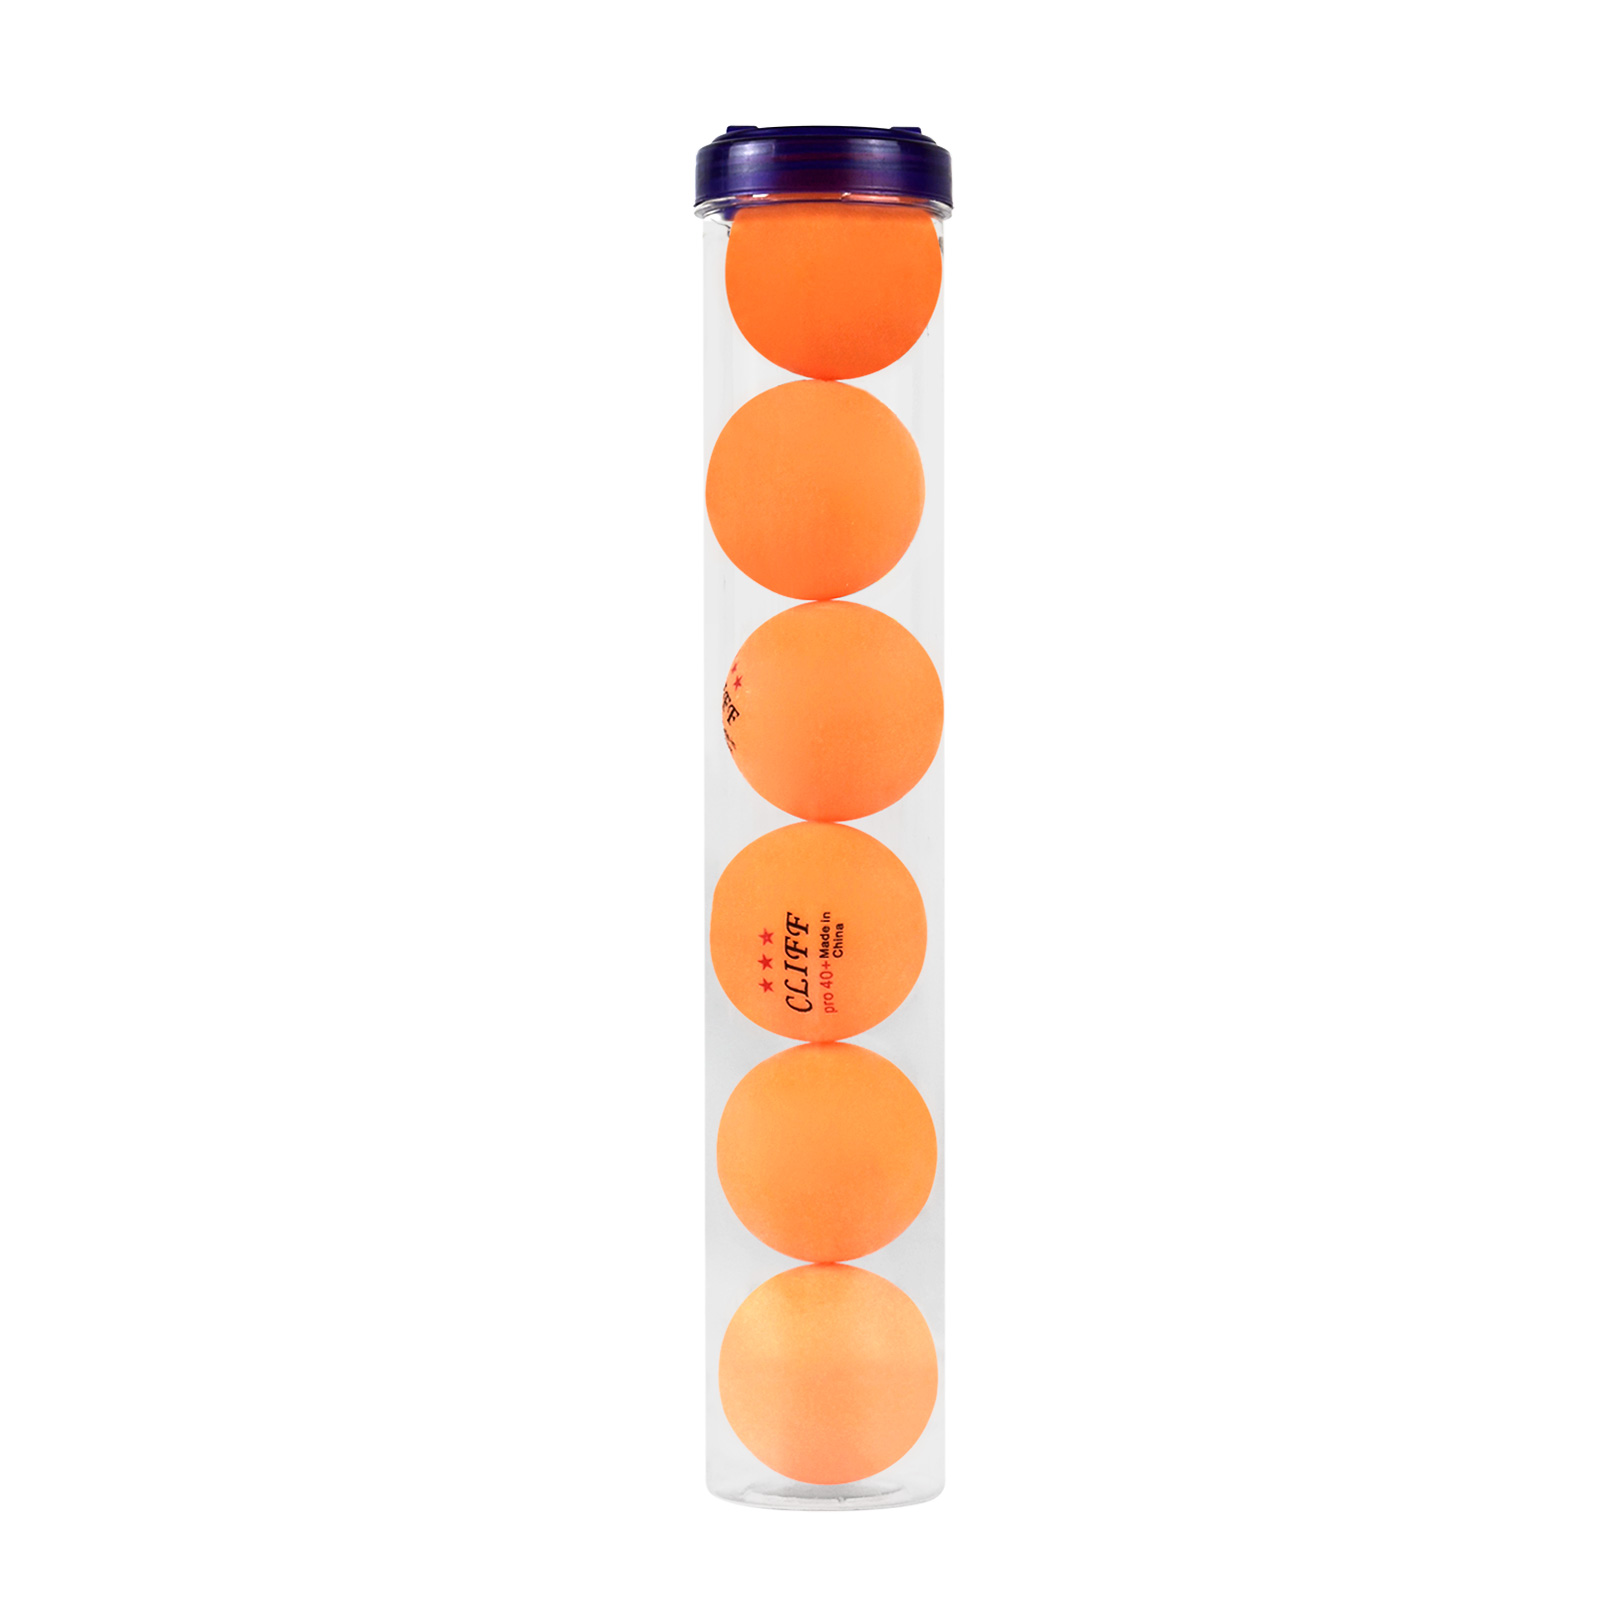 Мячи для настольного тенниса CLIFF 3 звезды, 40мм, туба 6 штук, оранжевые